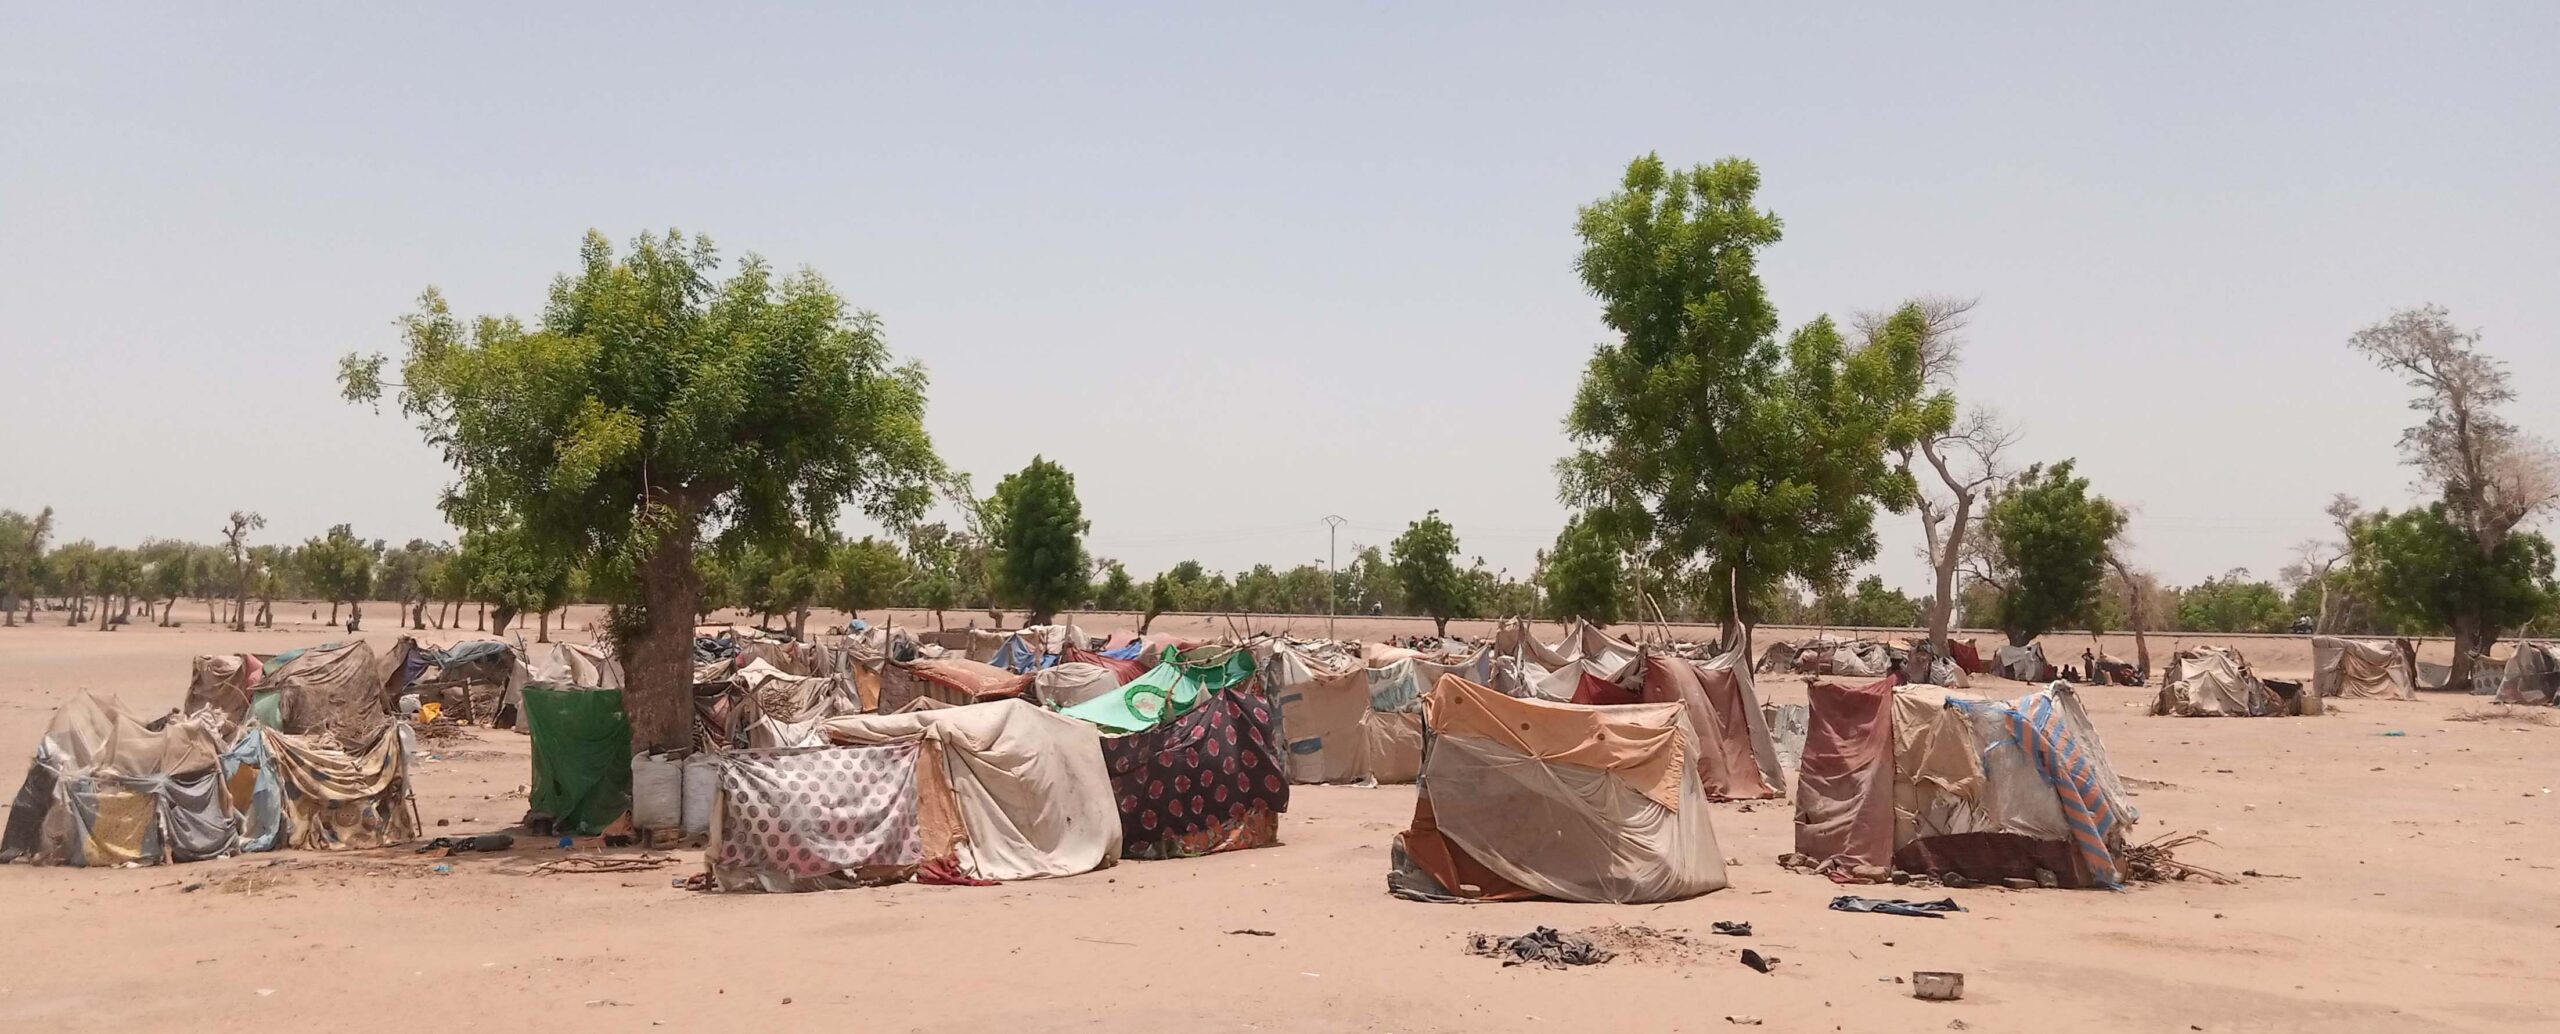 Les sinistrés de Toukra traités de ” paresseux” et sommés de quitter leur site d’accueil